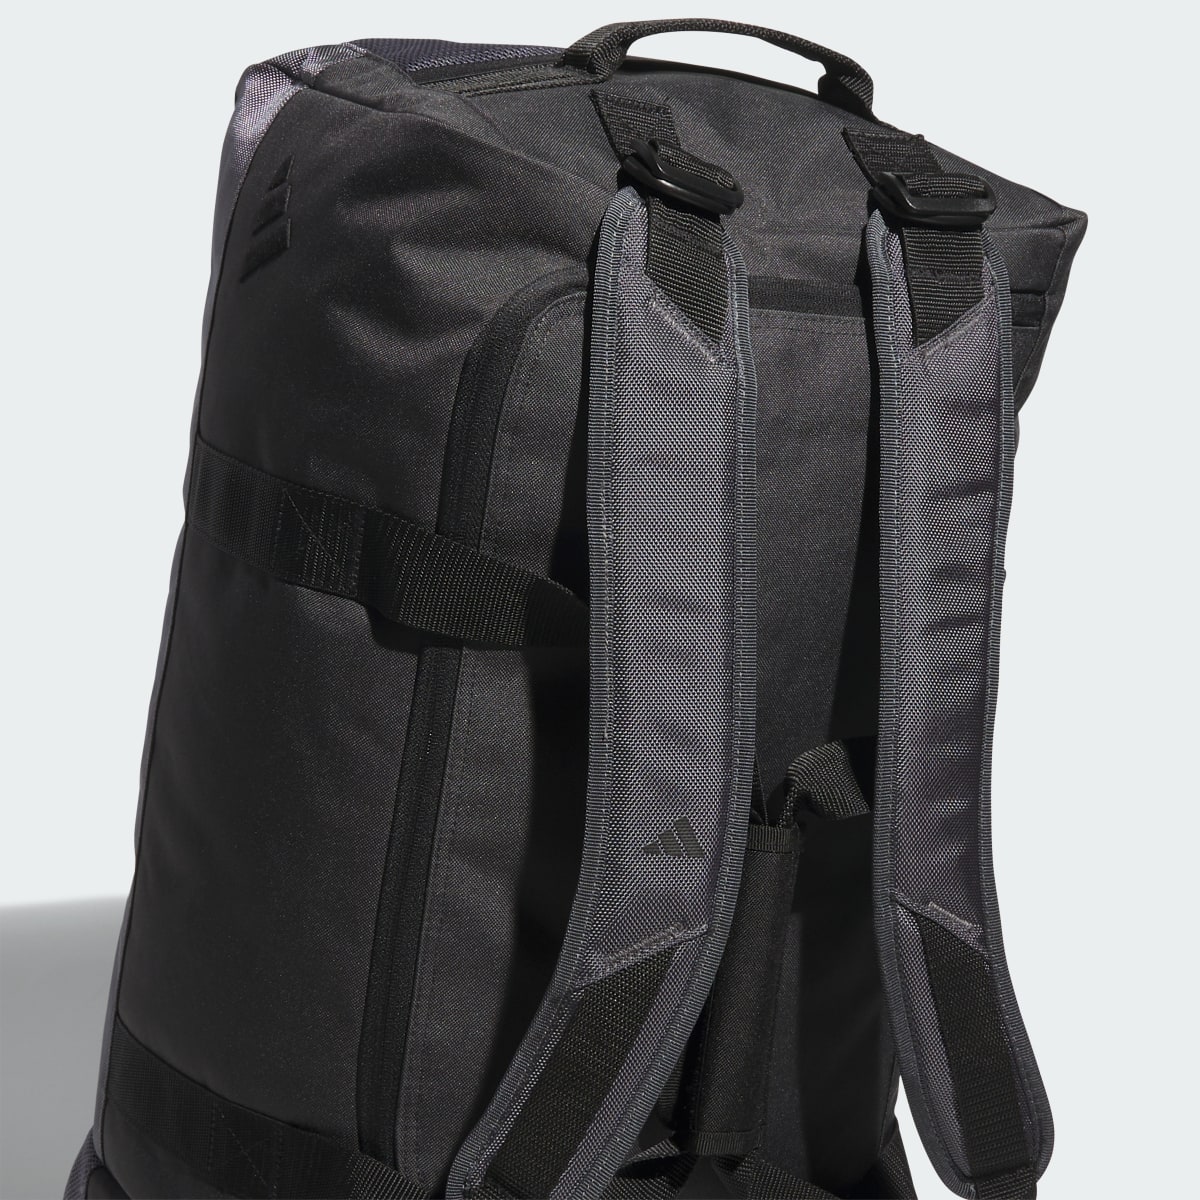 Adidas Hybrid Duffel Bag. 6